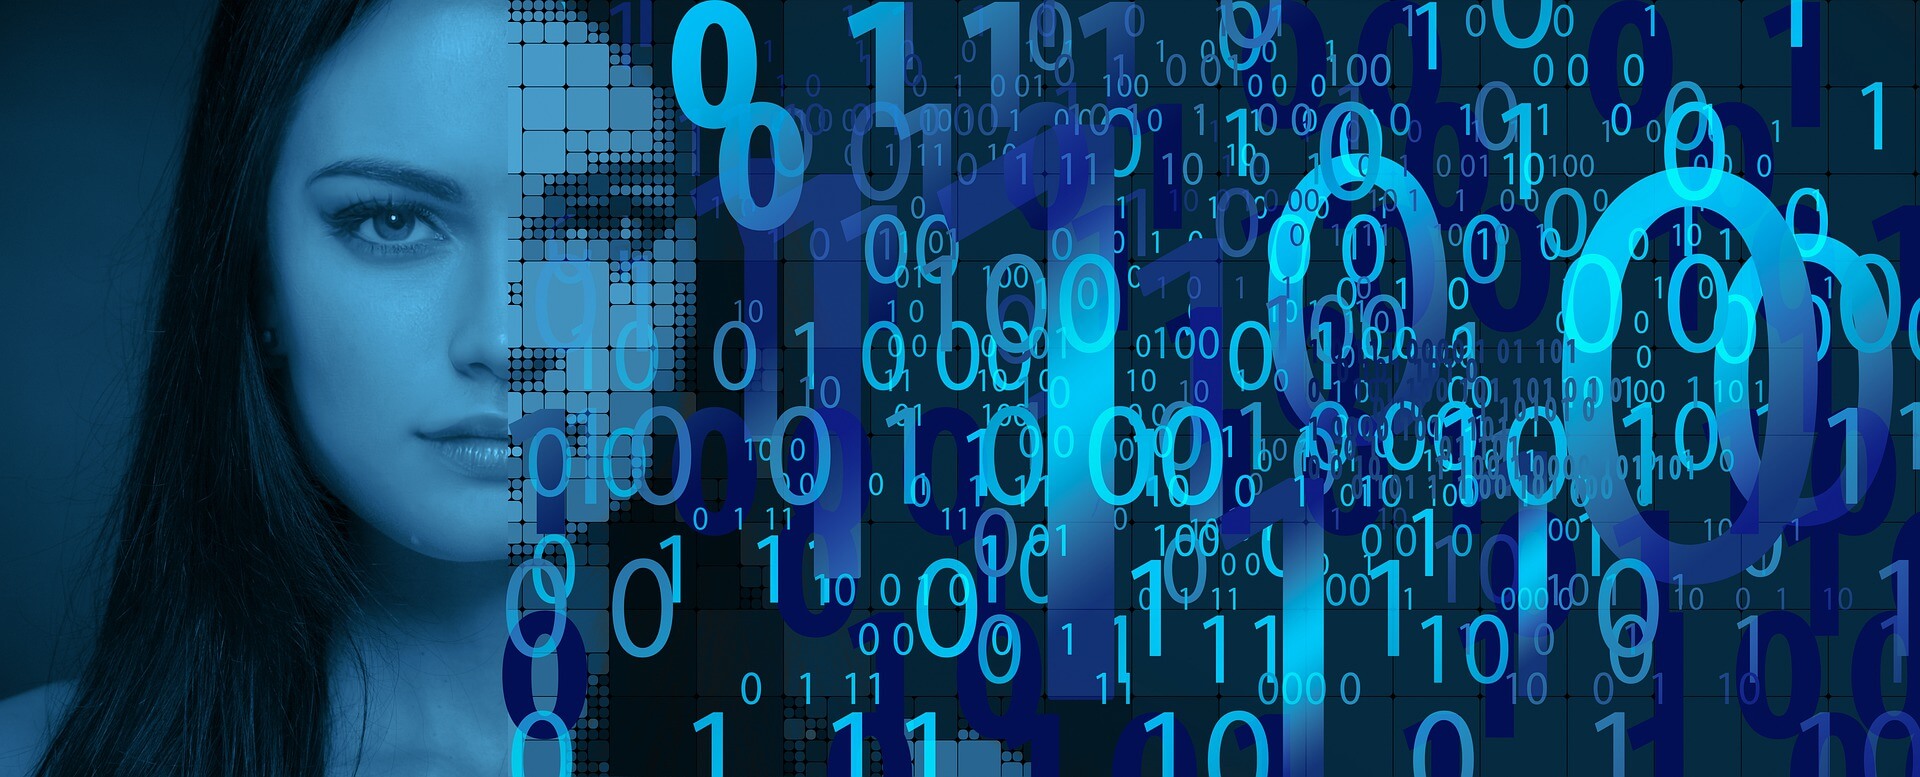 图片展示了一位女士的侧脸，背景是由数字和锁形图标构成的数字化图案，暗示着网络安全或数据保护的主题。